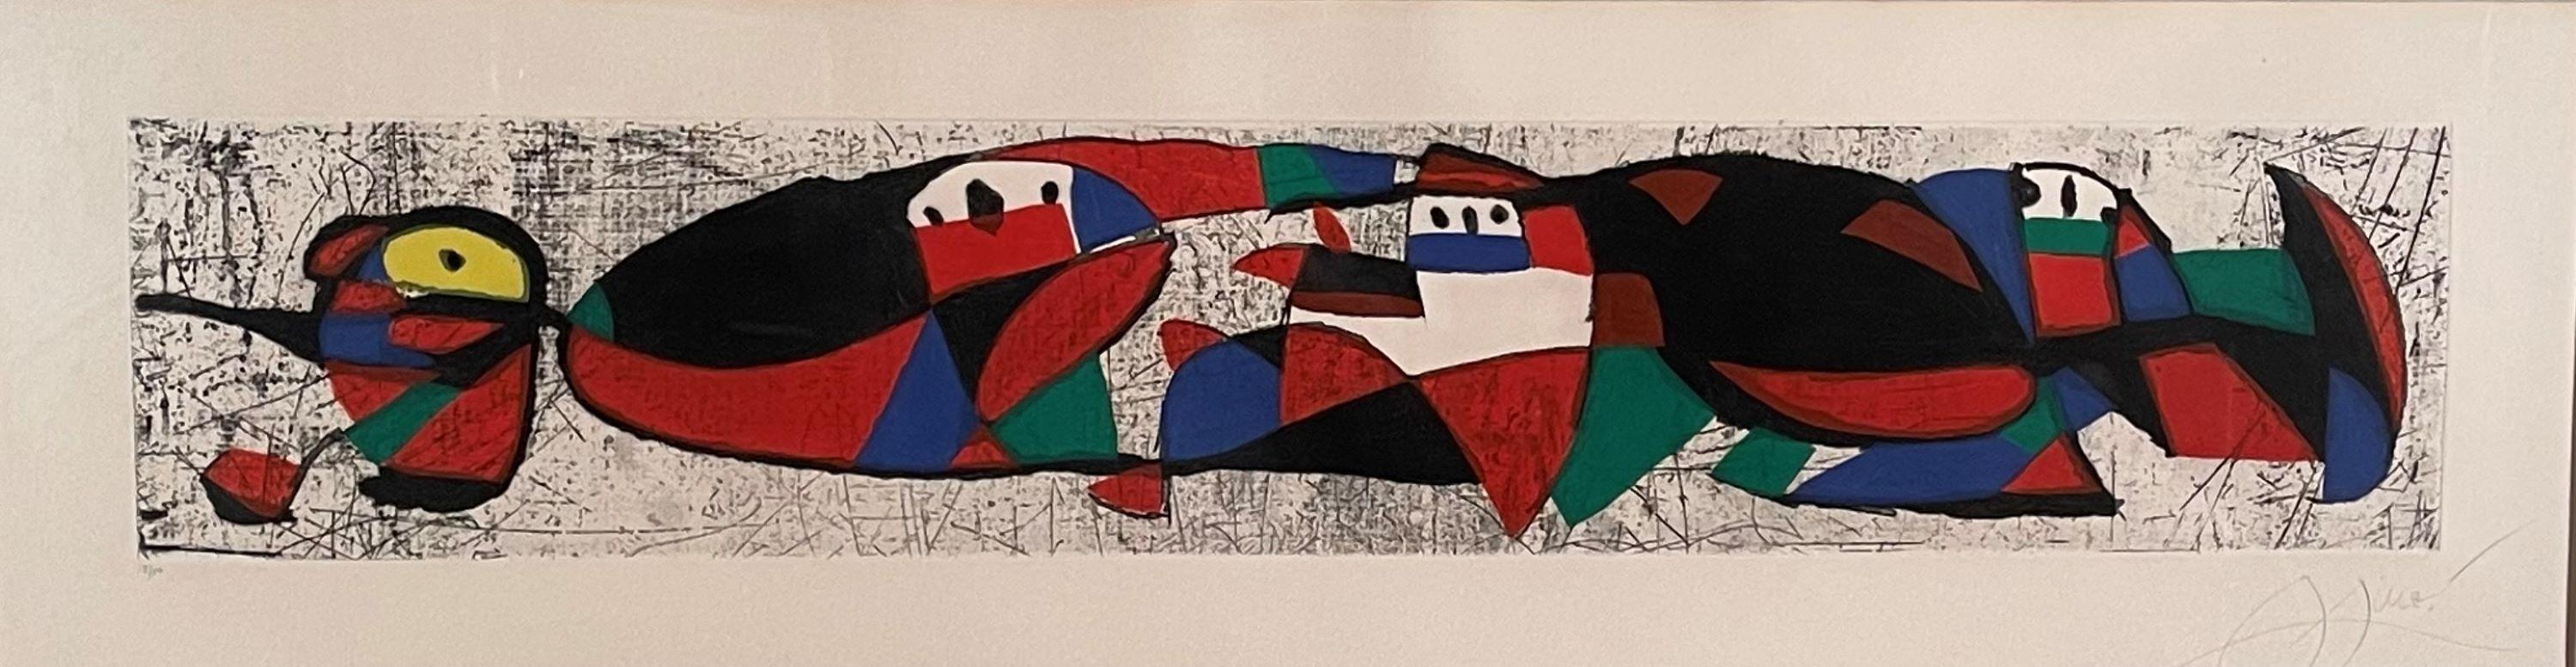 Joan Miró Abstract Print - LES TROGLODYTES